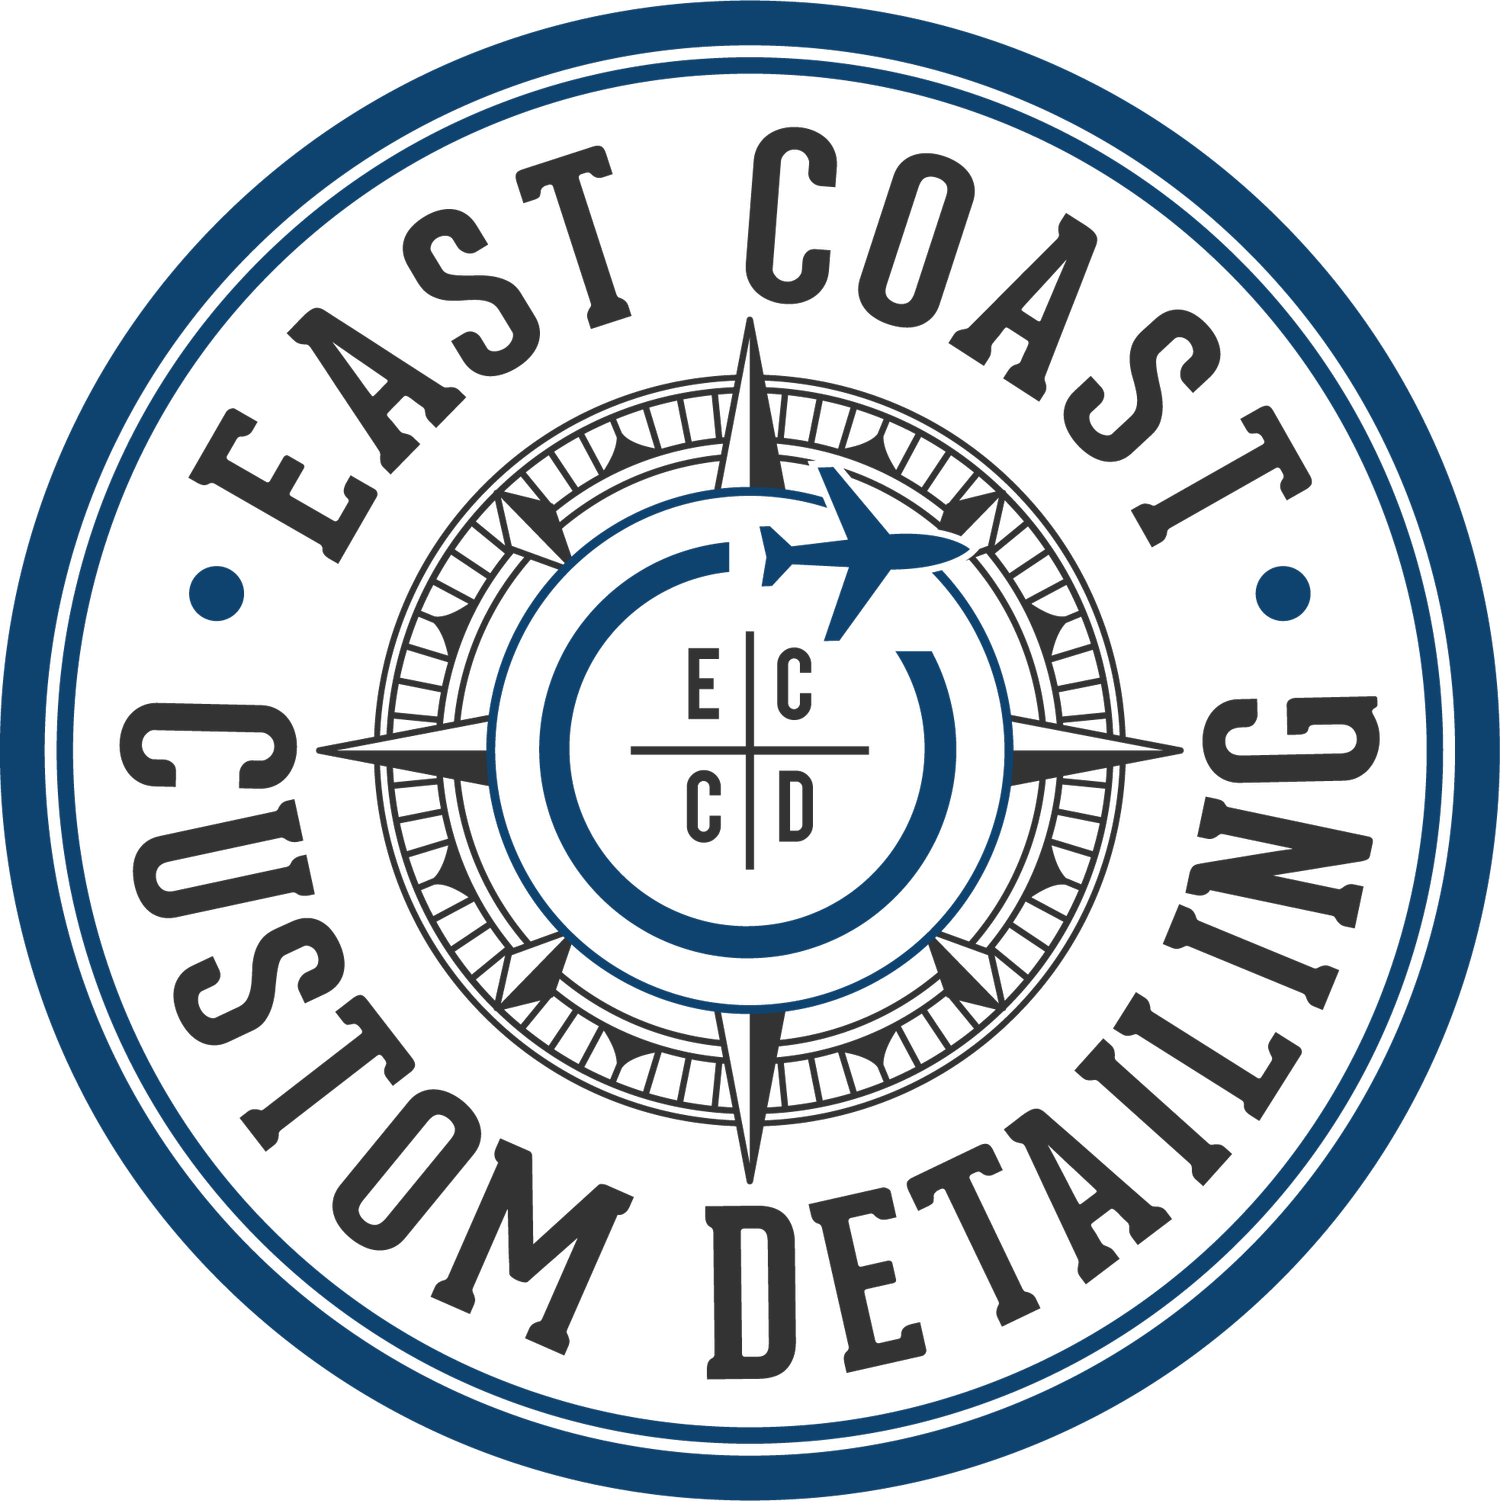 East Coast Custom Detailing